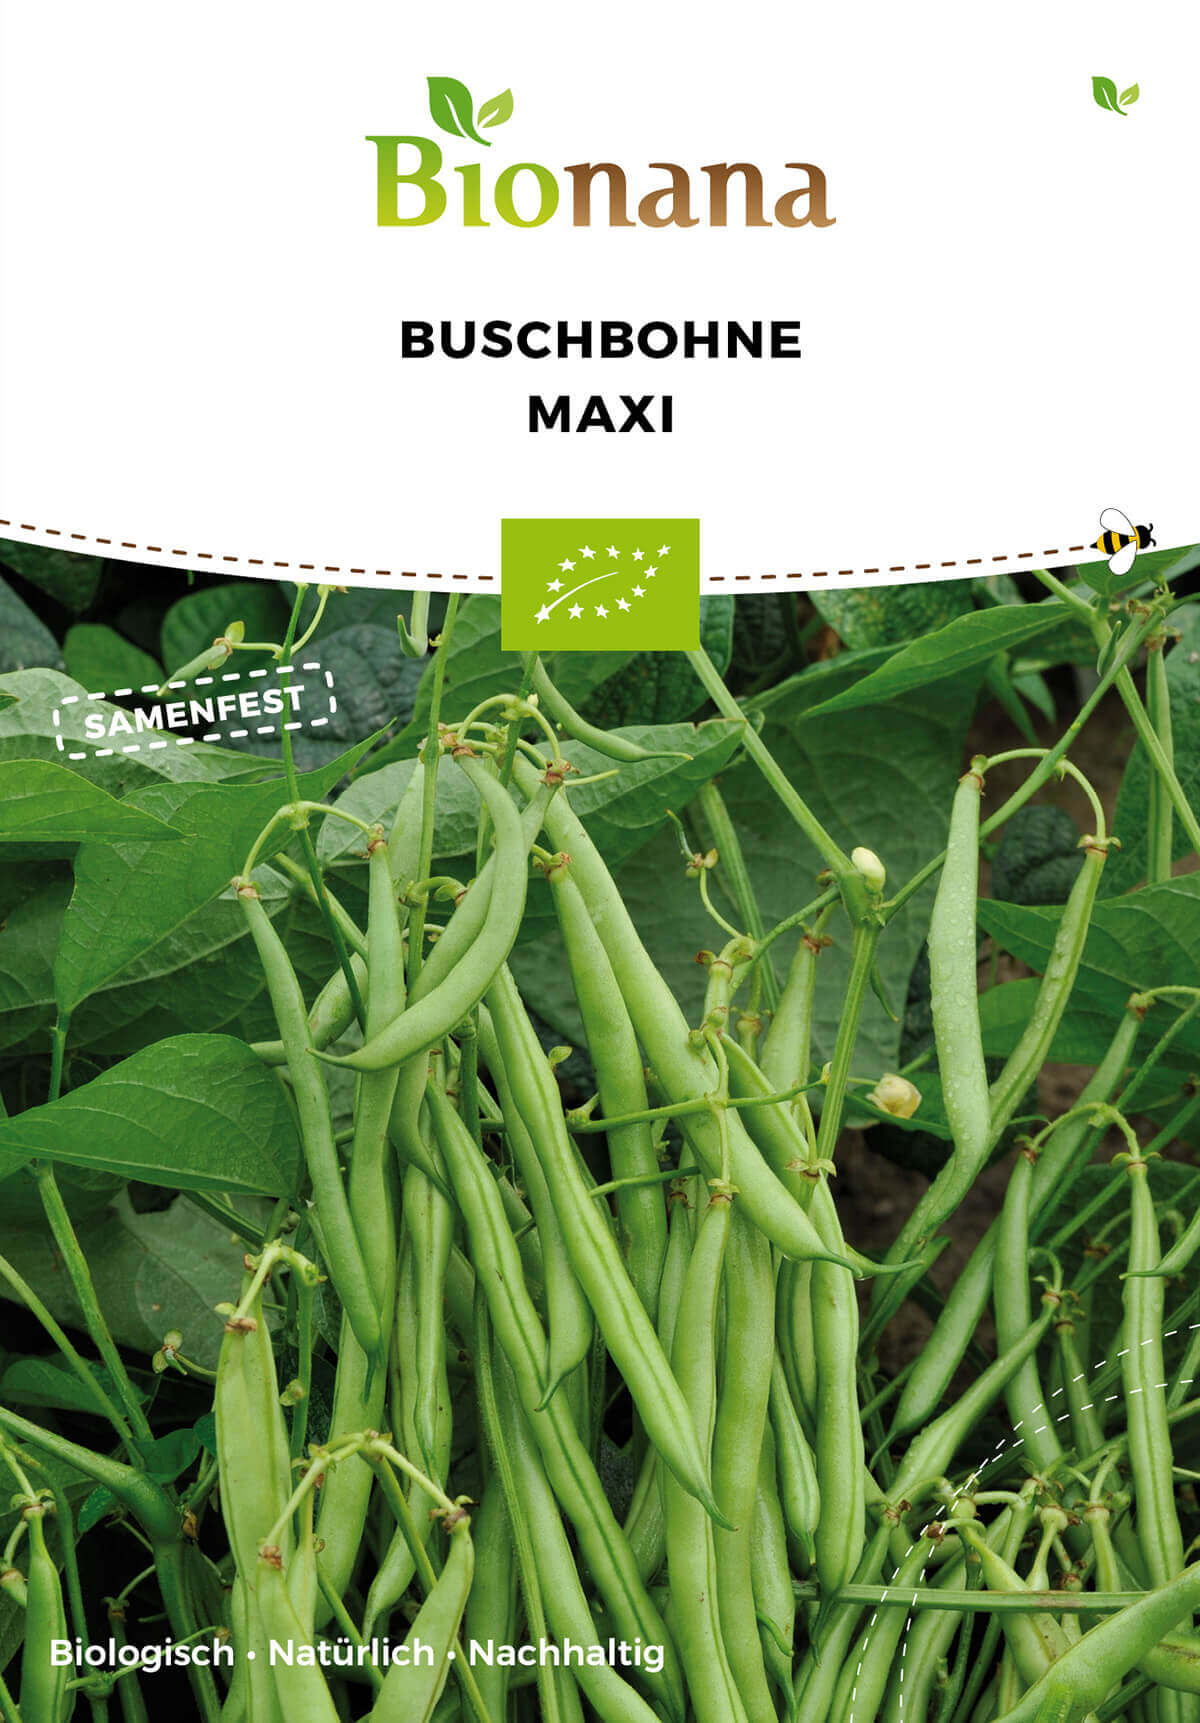 Buschbohne Maxi | BIO Buschbohnensamen von Bionana